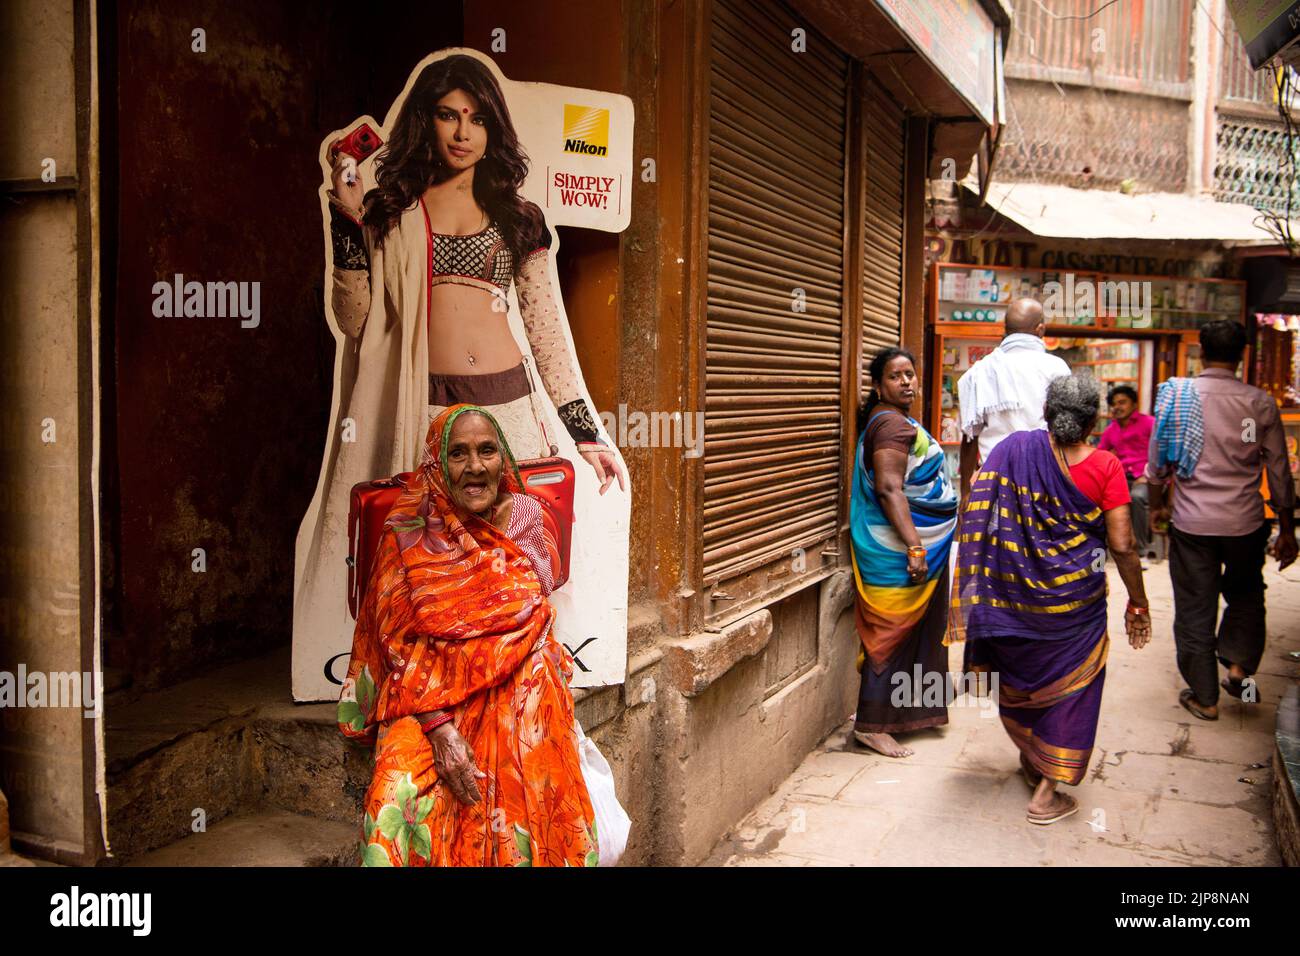 Alte Inderin mit Saree sitzt unter Nikon-Ladenposter des Bikini-Modells in engen Gassen von Varanasi, Banaras, Benaras, Kashi, Uttar Pradesh, Indien Stockfoto